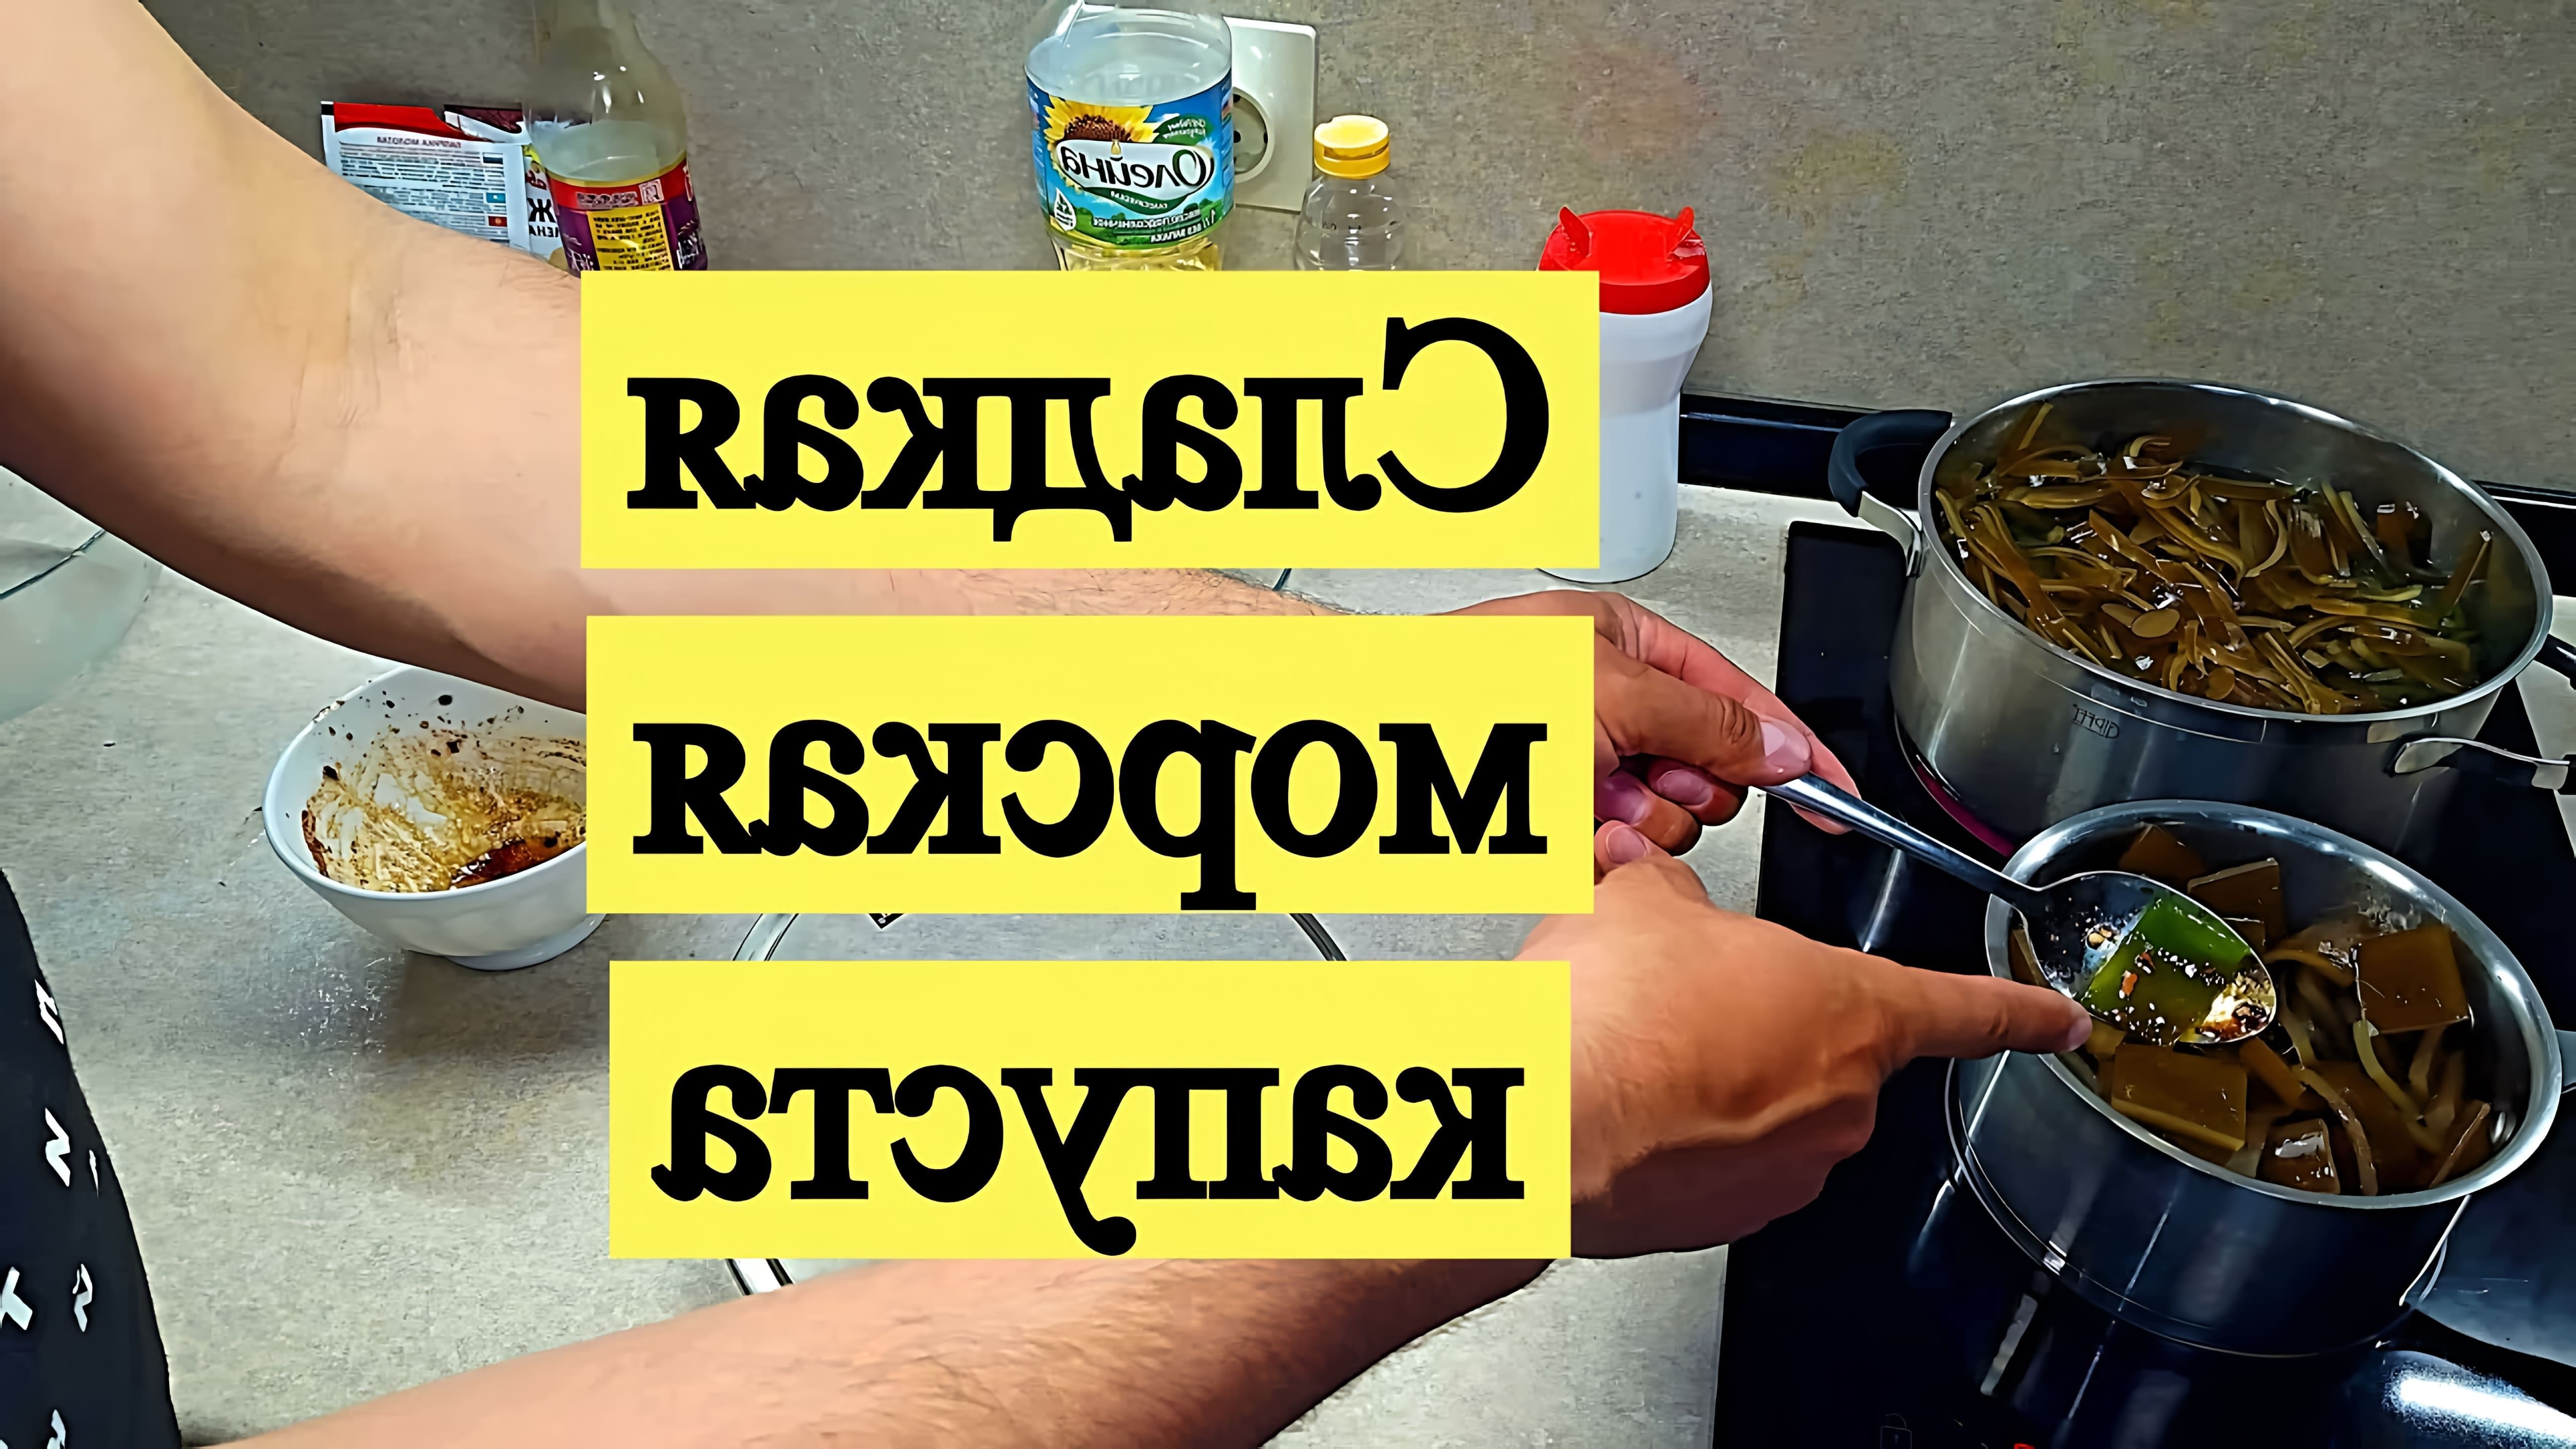 В этом видео демонстрируется рецепт приготовления сладкой морской капусты